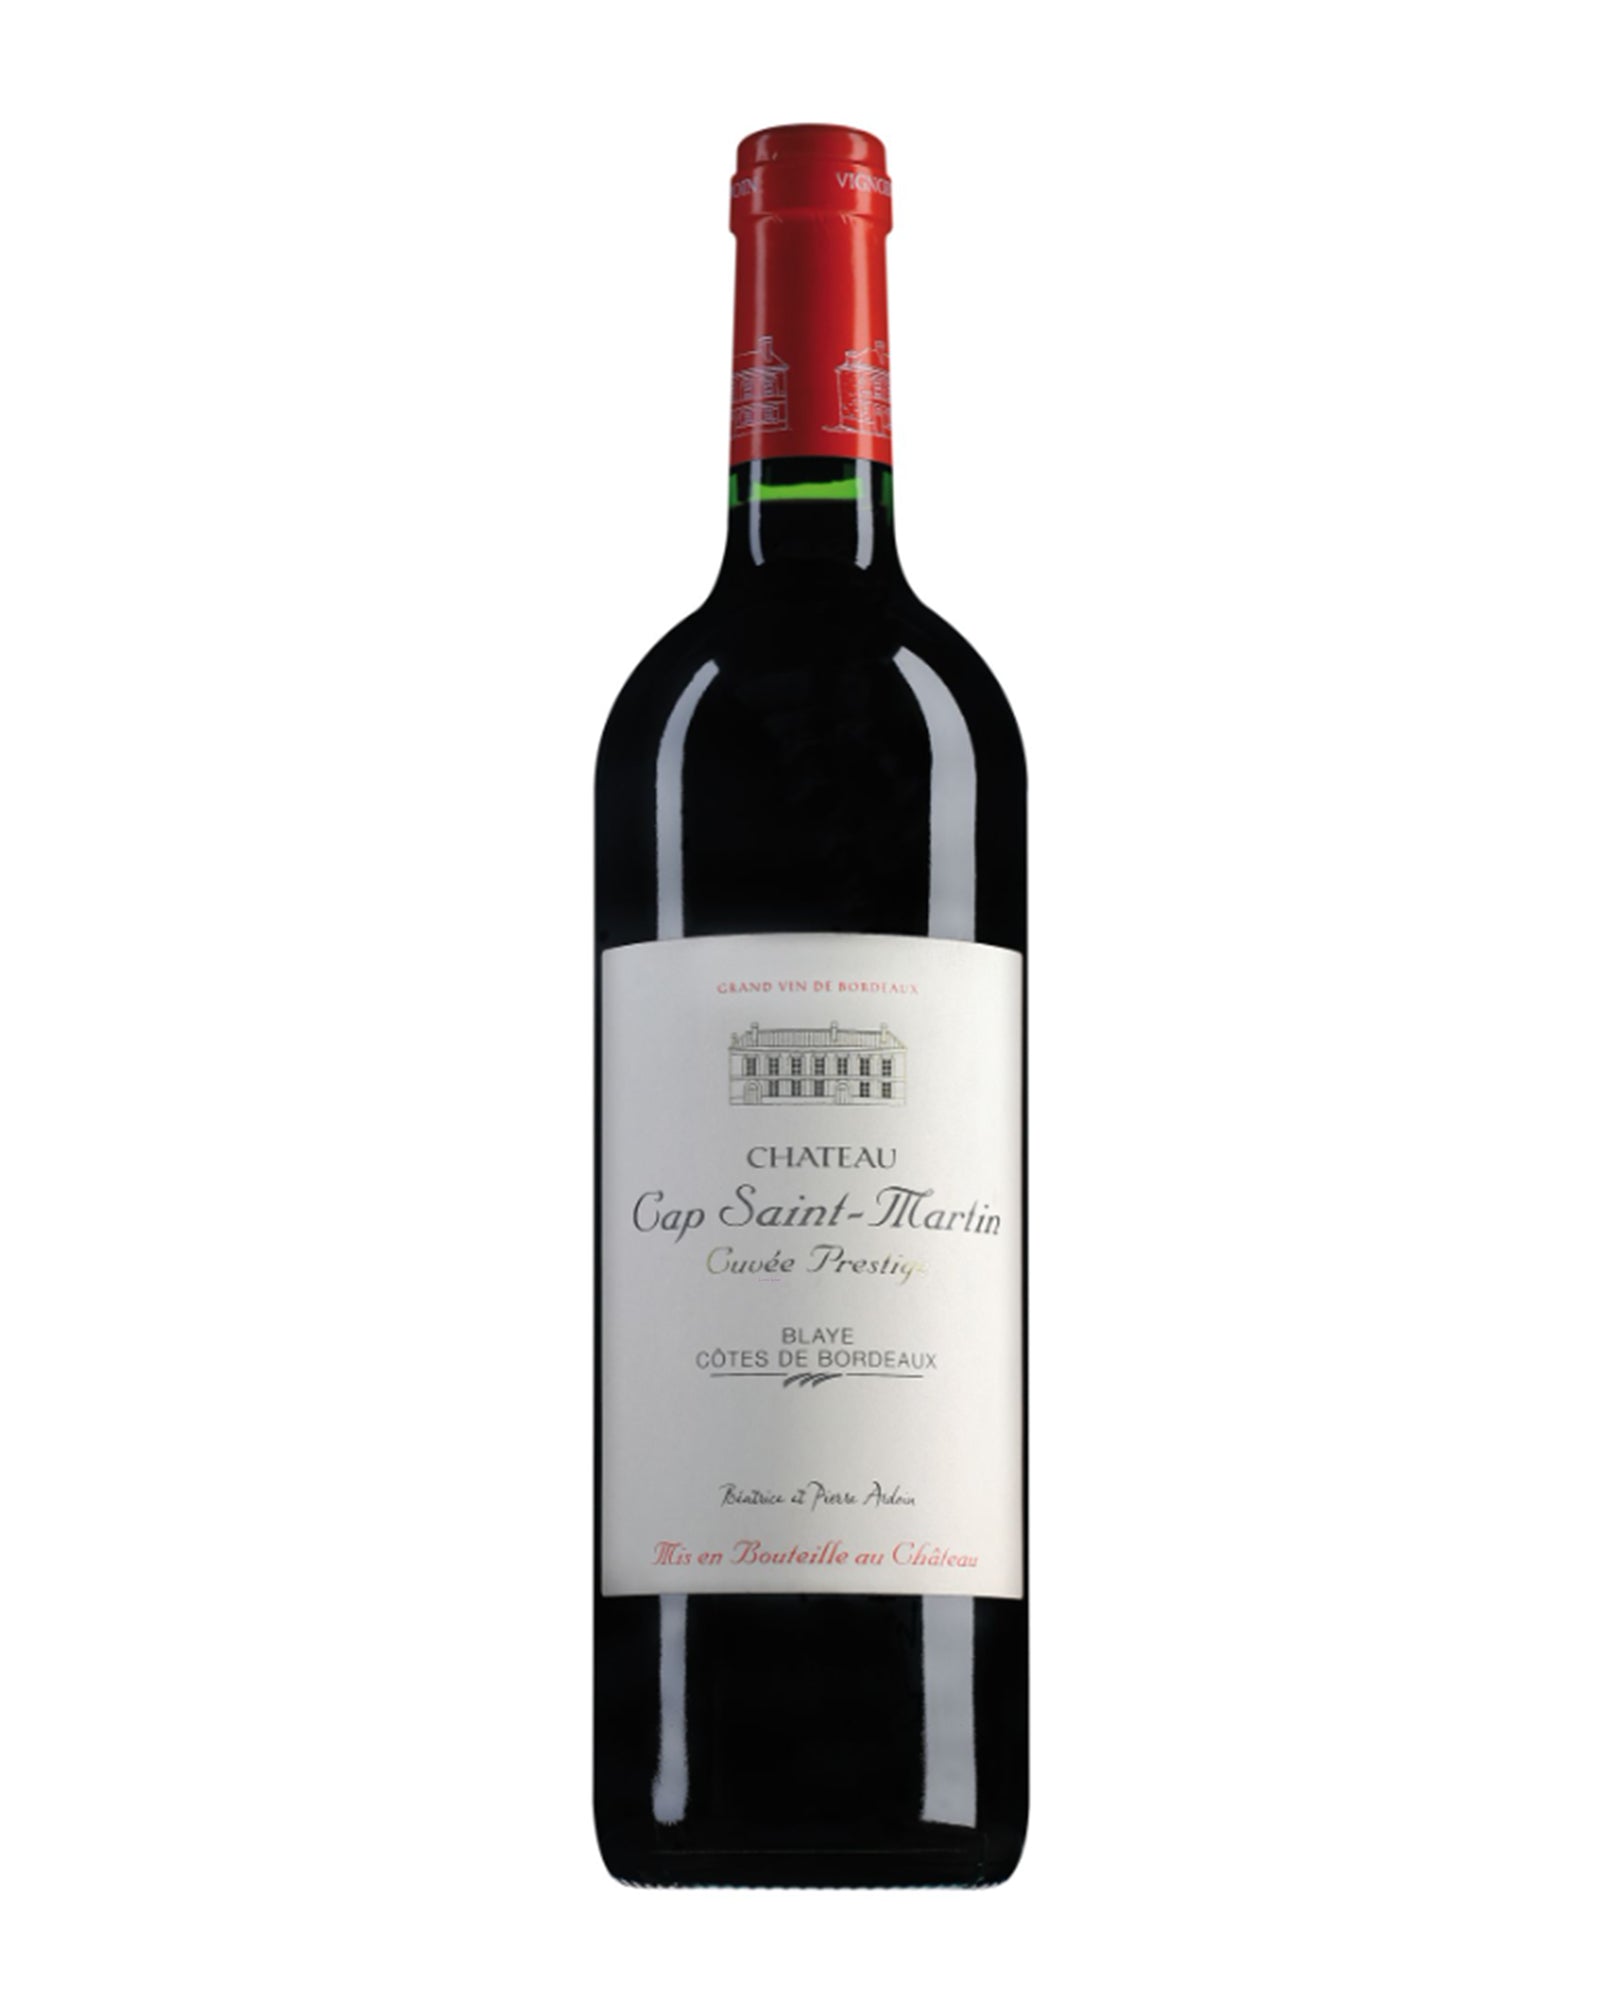 Blaye Côtes de Bordeaux Chateau Cap St Martin cuvée prestige 2019